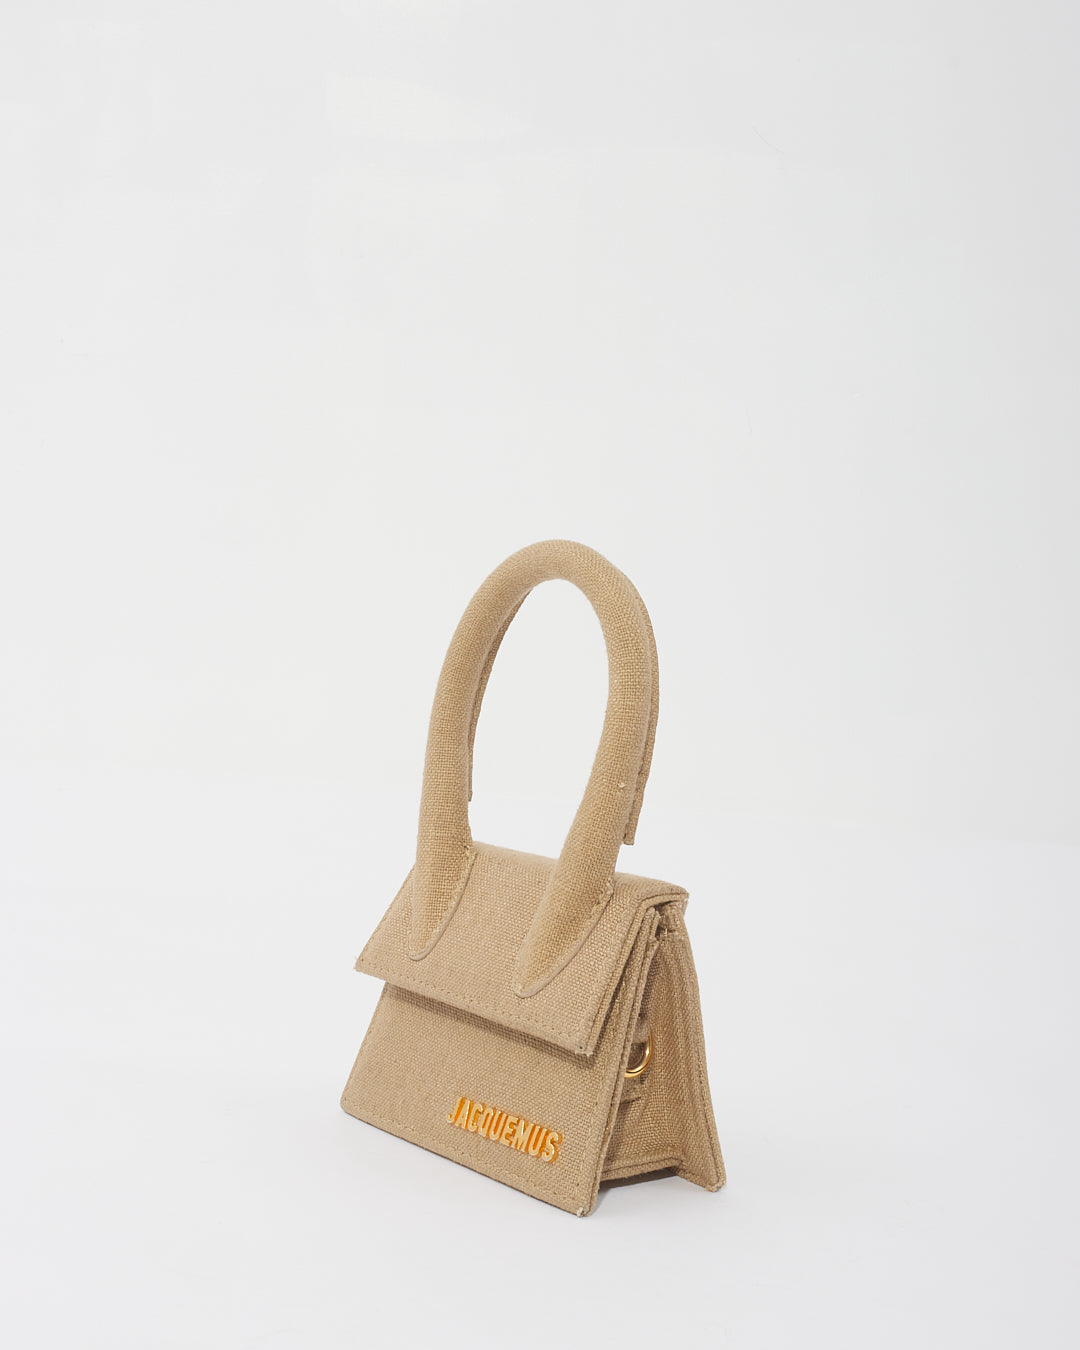 JACQUEMUS Bag 'Le Chiquito' Beige Mini Bag